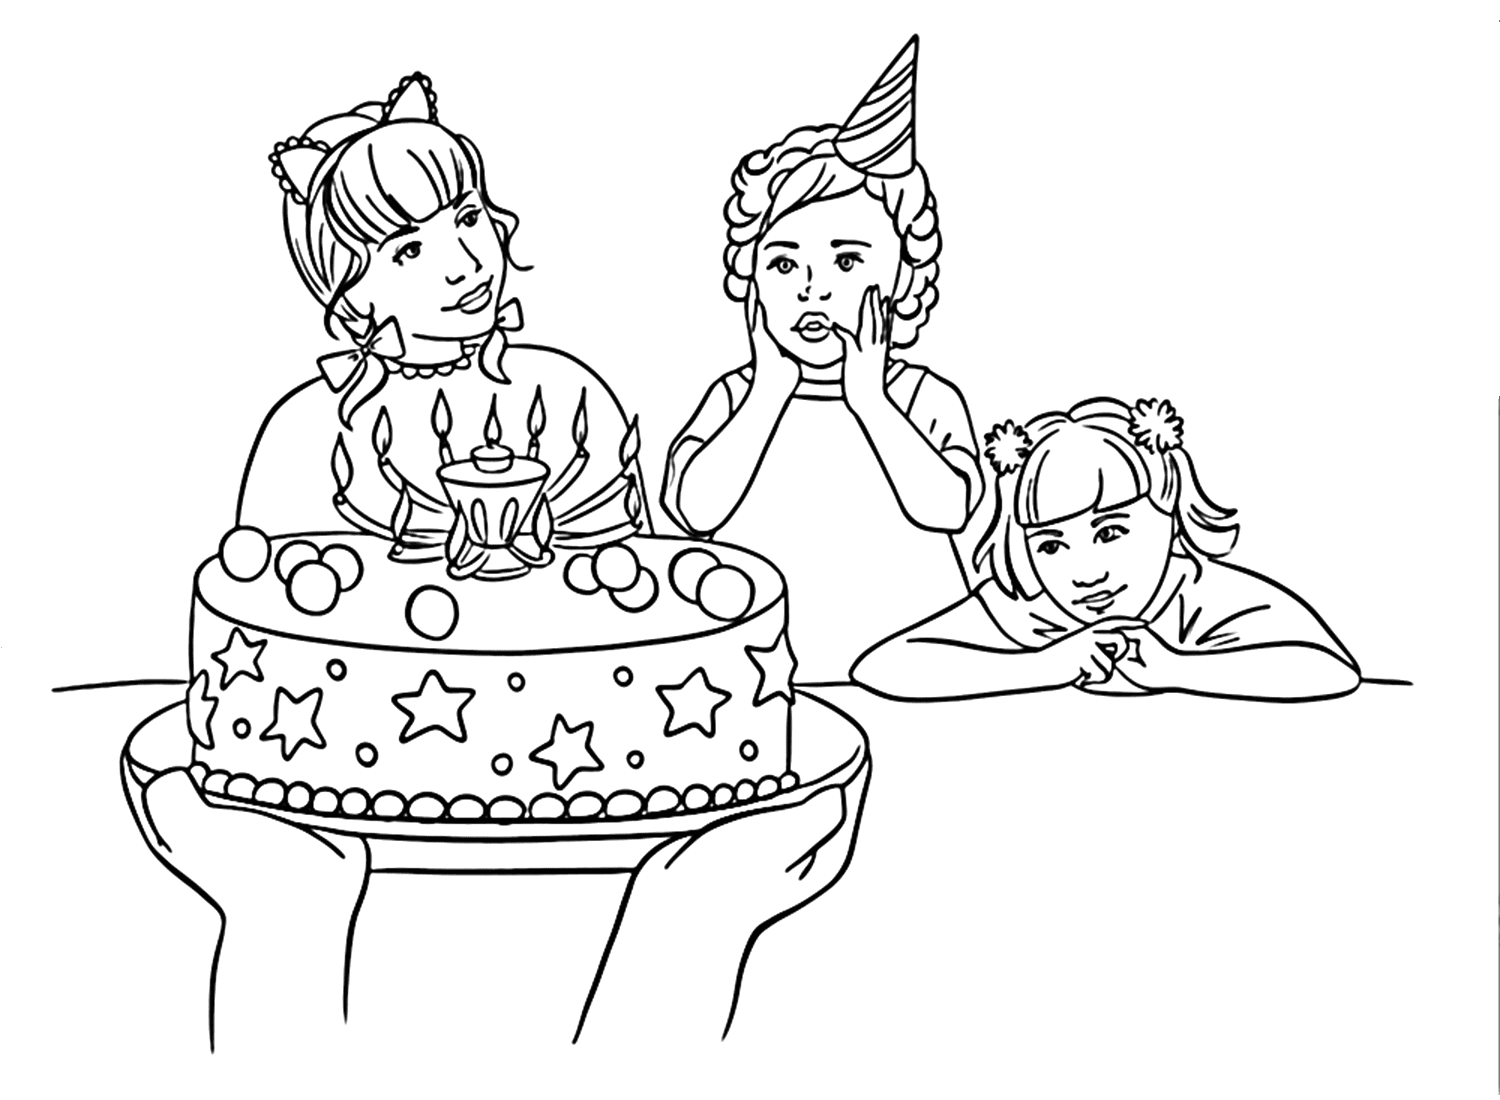 كعكة في صفحة تلوين يوم الأخوات من يوم الأخوات